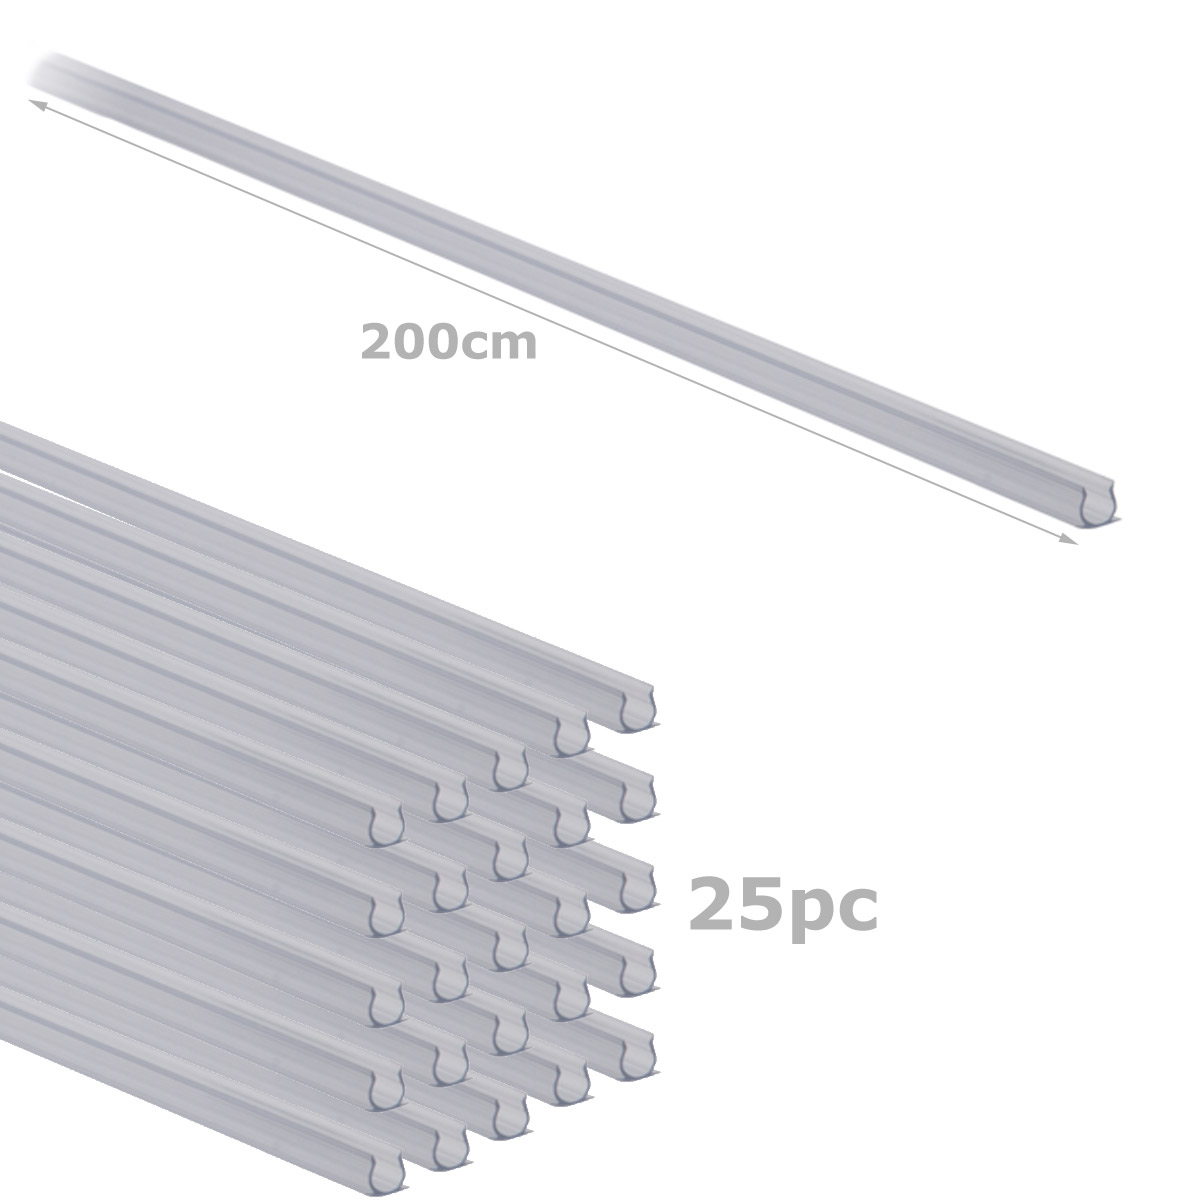 Befestigungsschienen für Lichtschlauch (12-13mm) 25 Stück - 200cm - Kunststoff, transparent